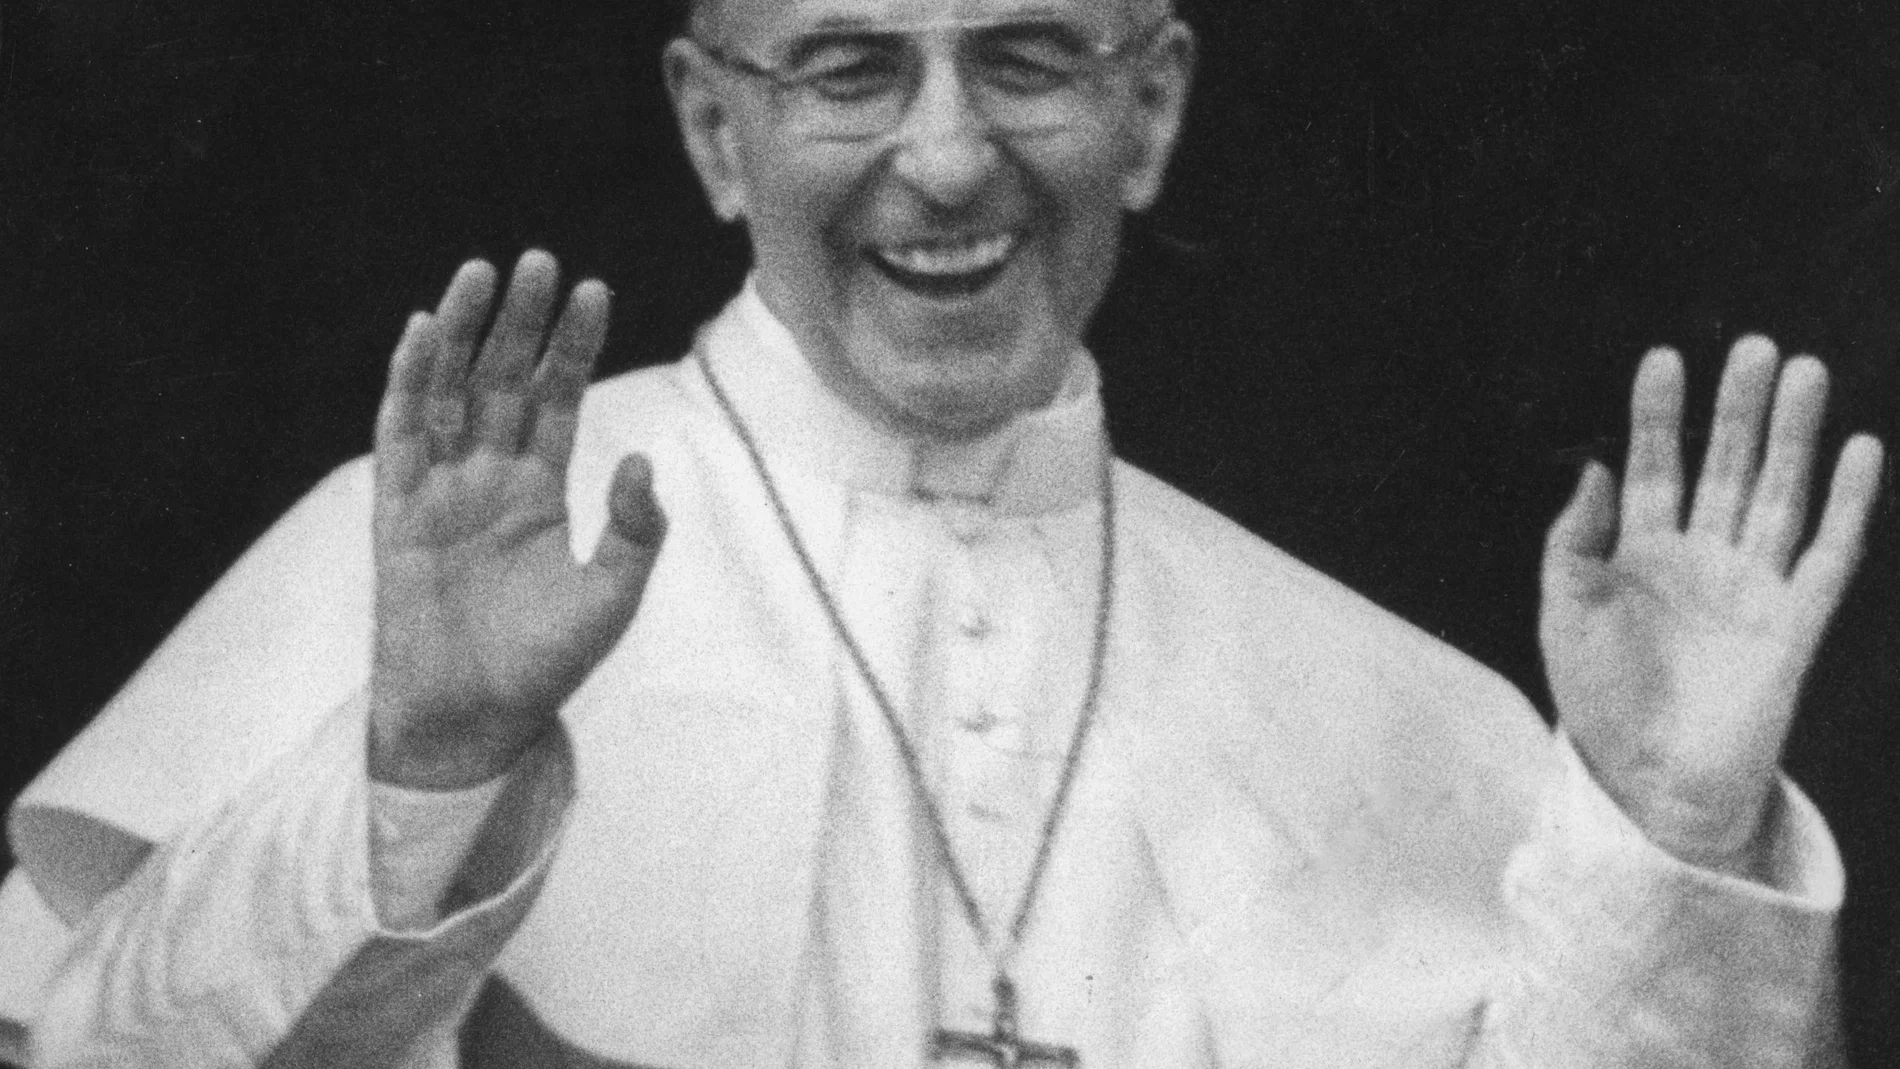 El Papa Juan Pablo I al día siguiente de ser elegido saludando desde el balcón central de la basílica de San Pedro (AP Photo) 27 de agosto de 1978.